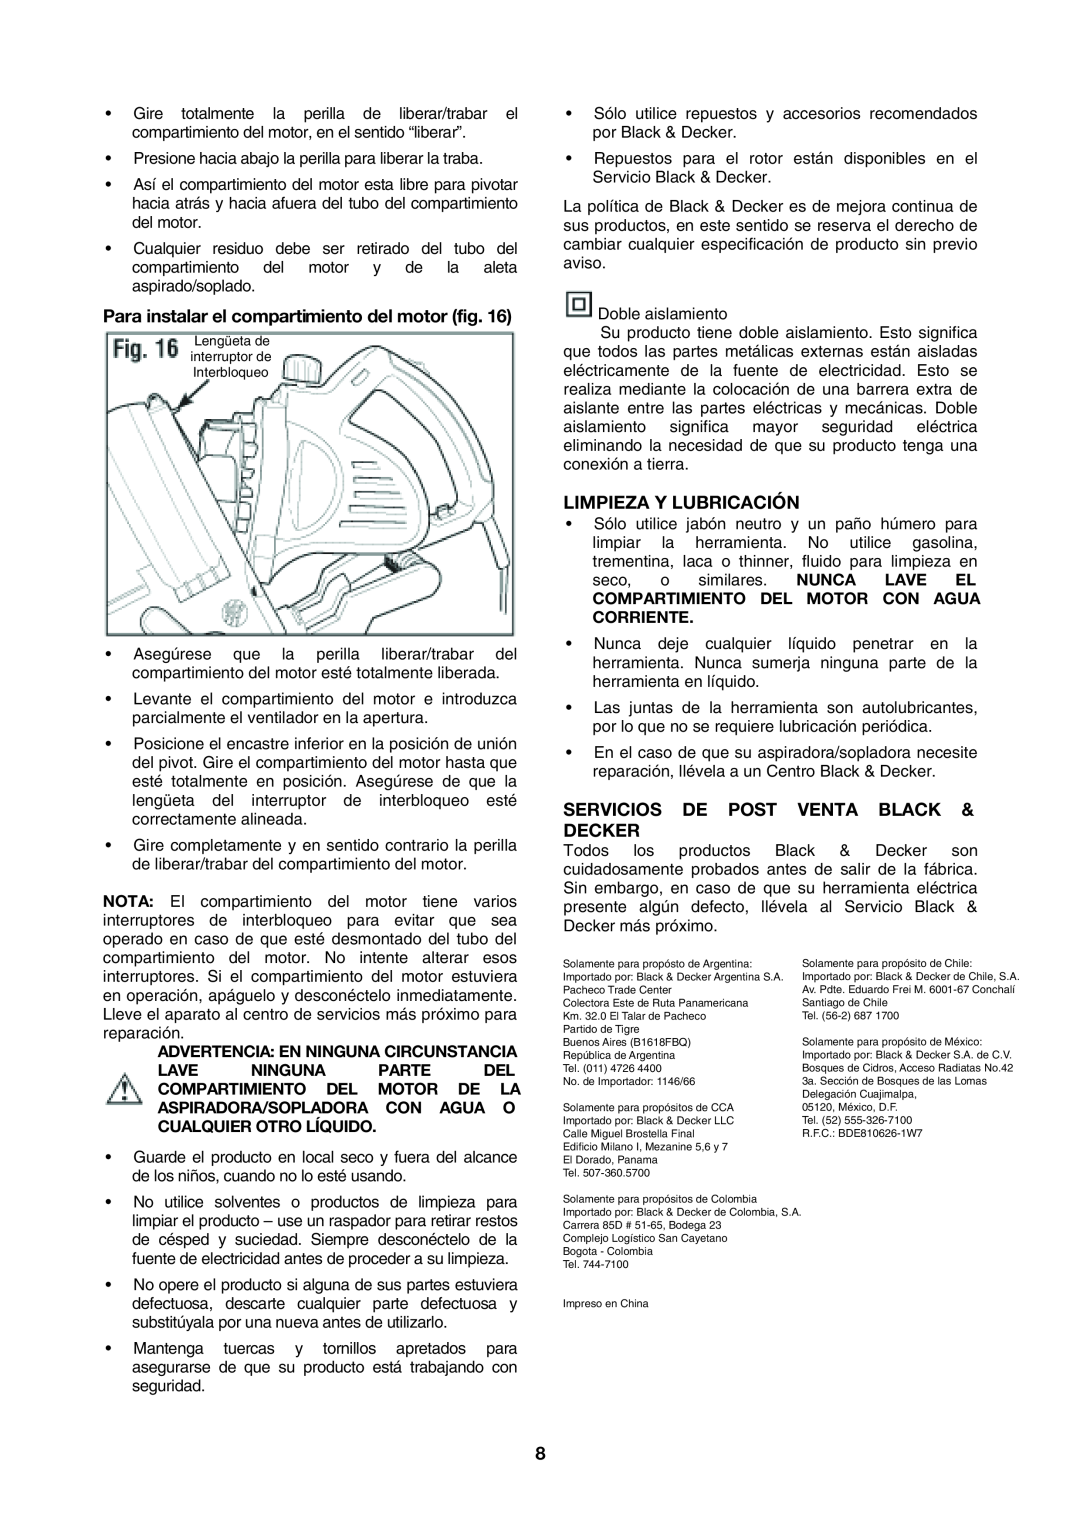 Black & Decker BV2200 instruction manual Para instalar el compartimiento del motor fig, Limpieza Y Lubricación 